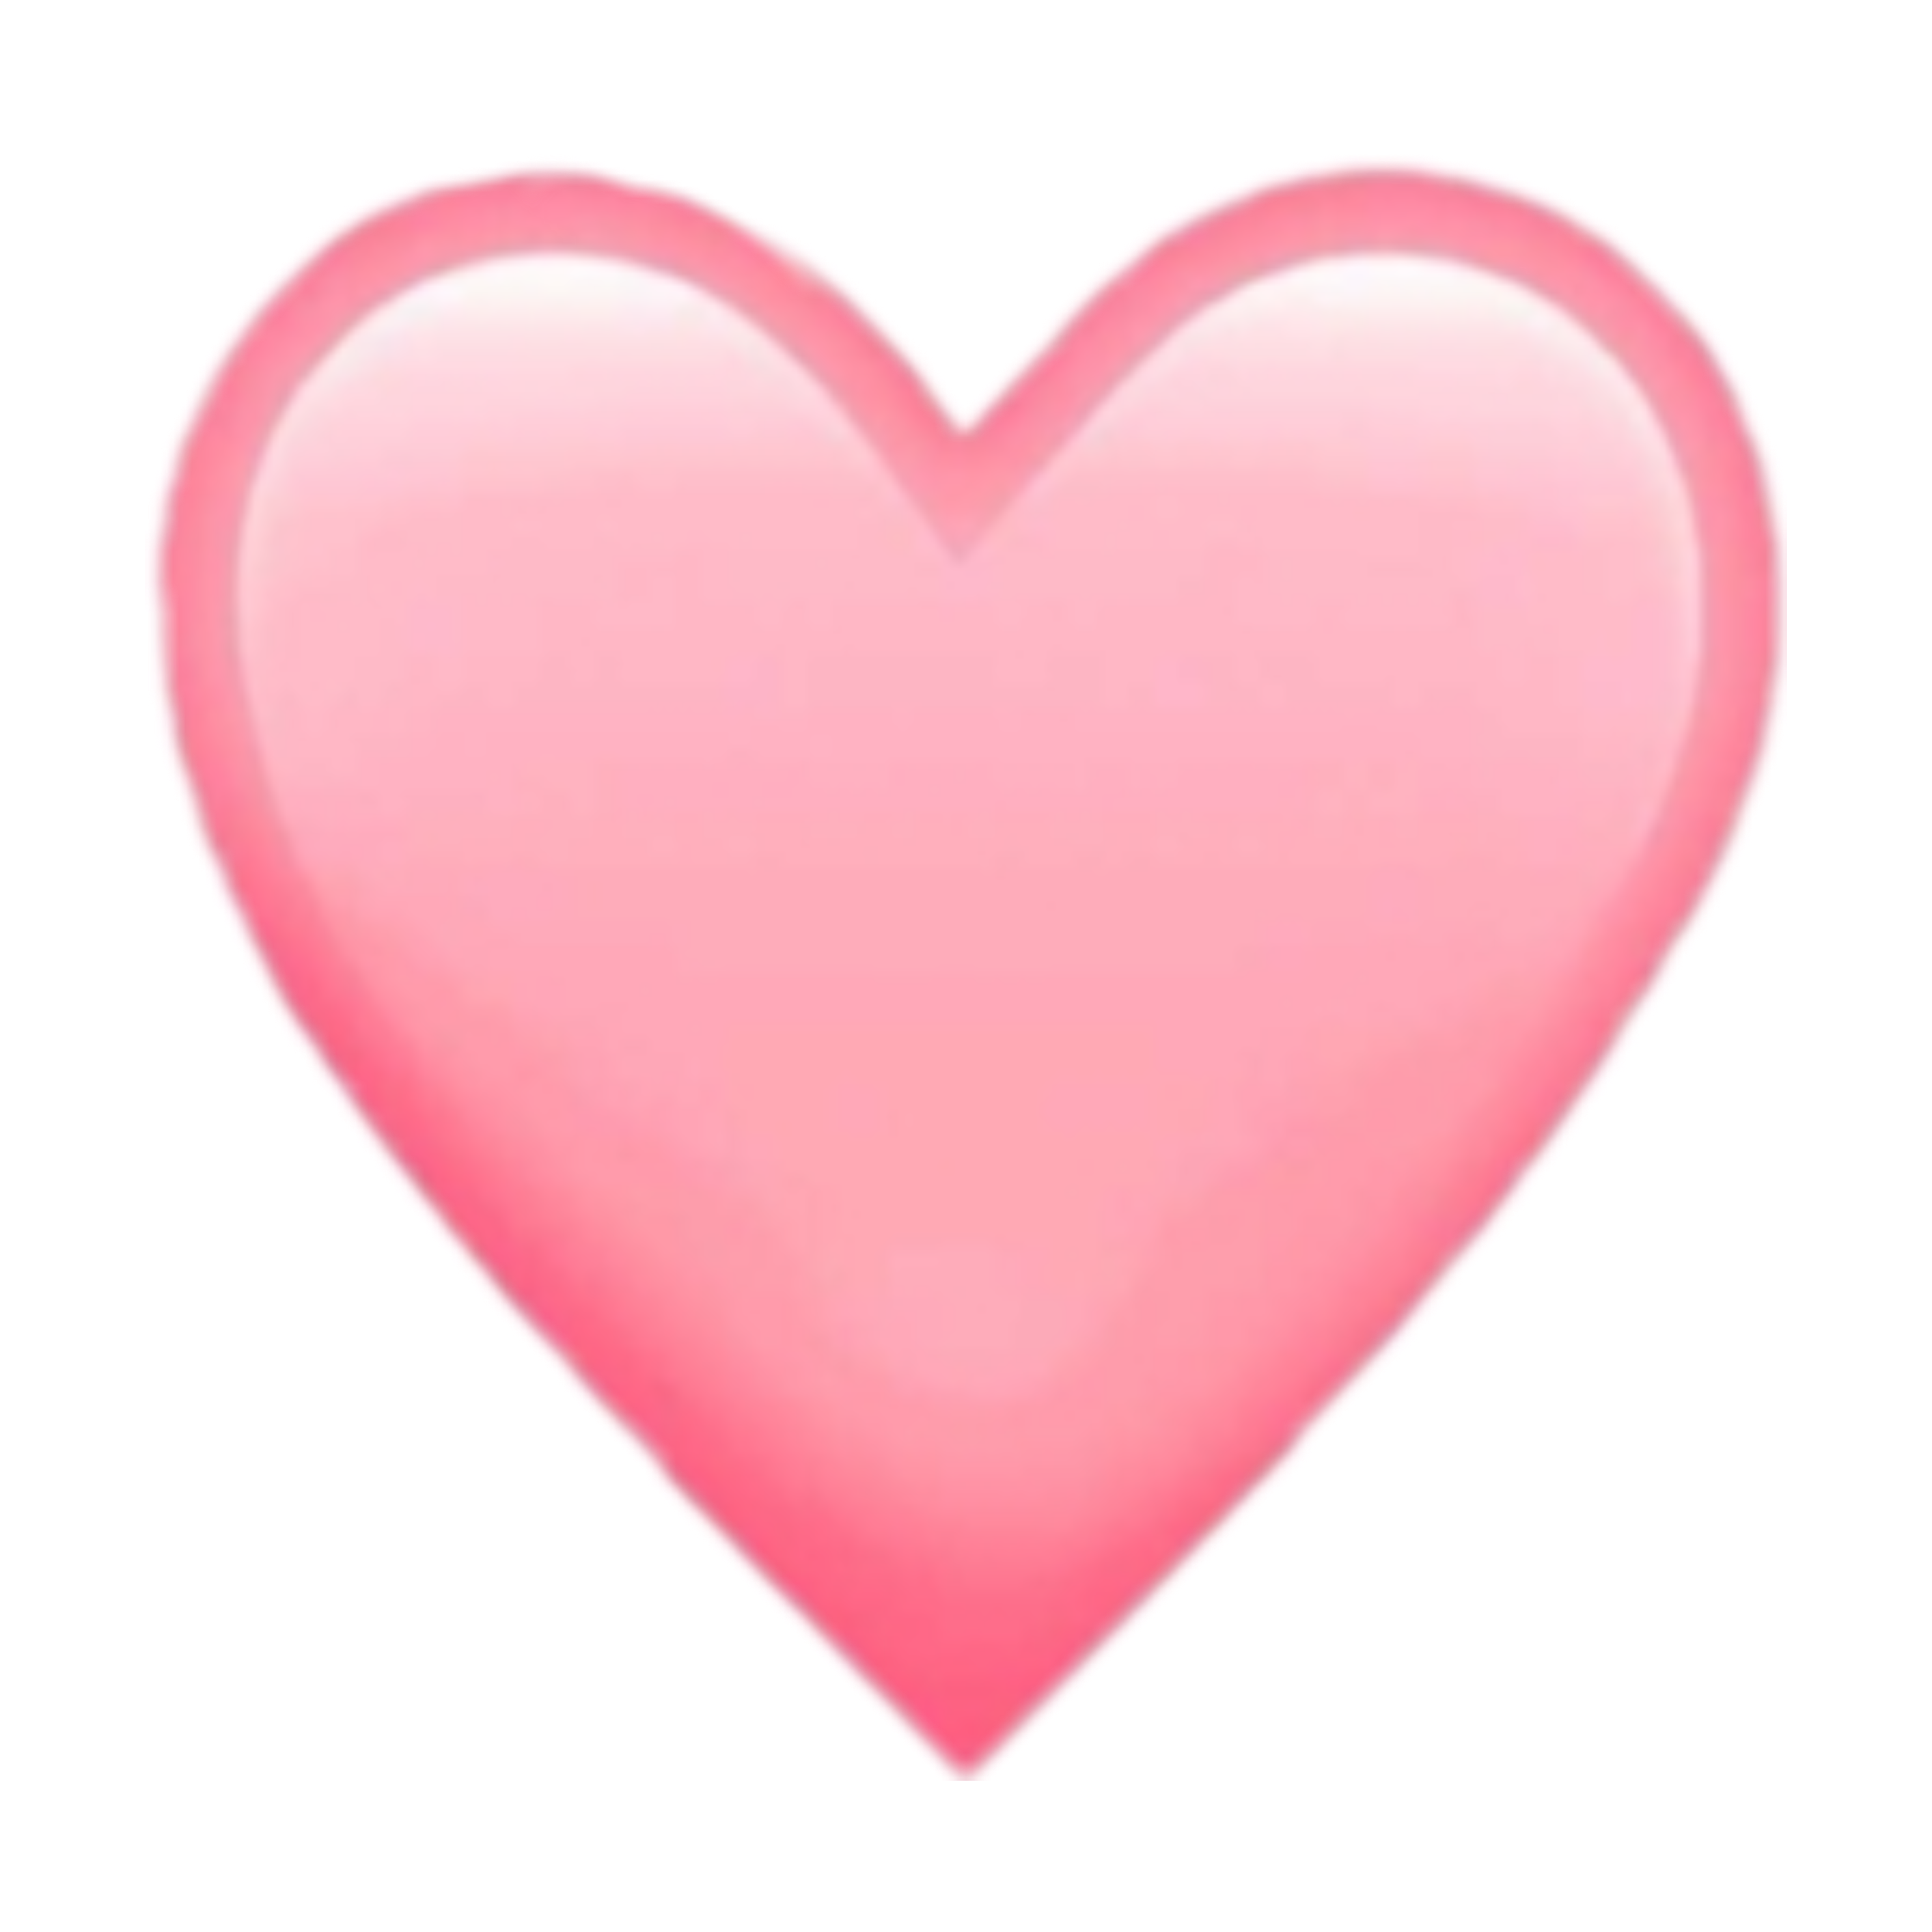 emoji emojis tumblr instagram insta aesthetic mood cute... - Pastel Heart Emoji